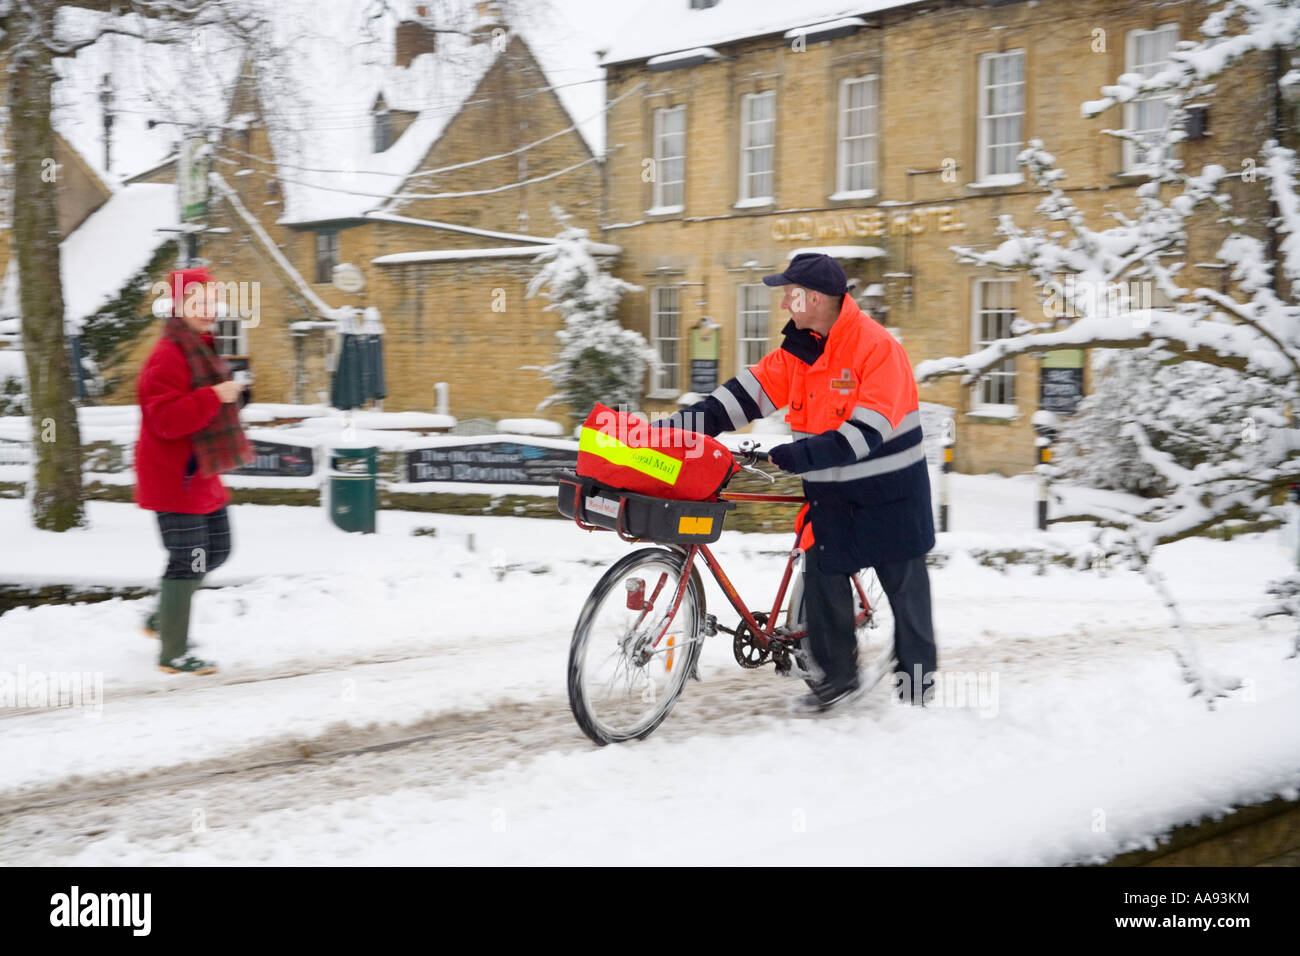 La prestation de la poste lors de neige de l'hiver dans le village de Cotswold Bourton On The Water, Gloucestershire UK Banque D'Images